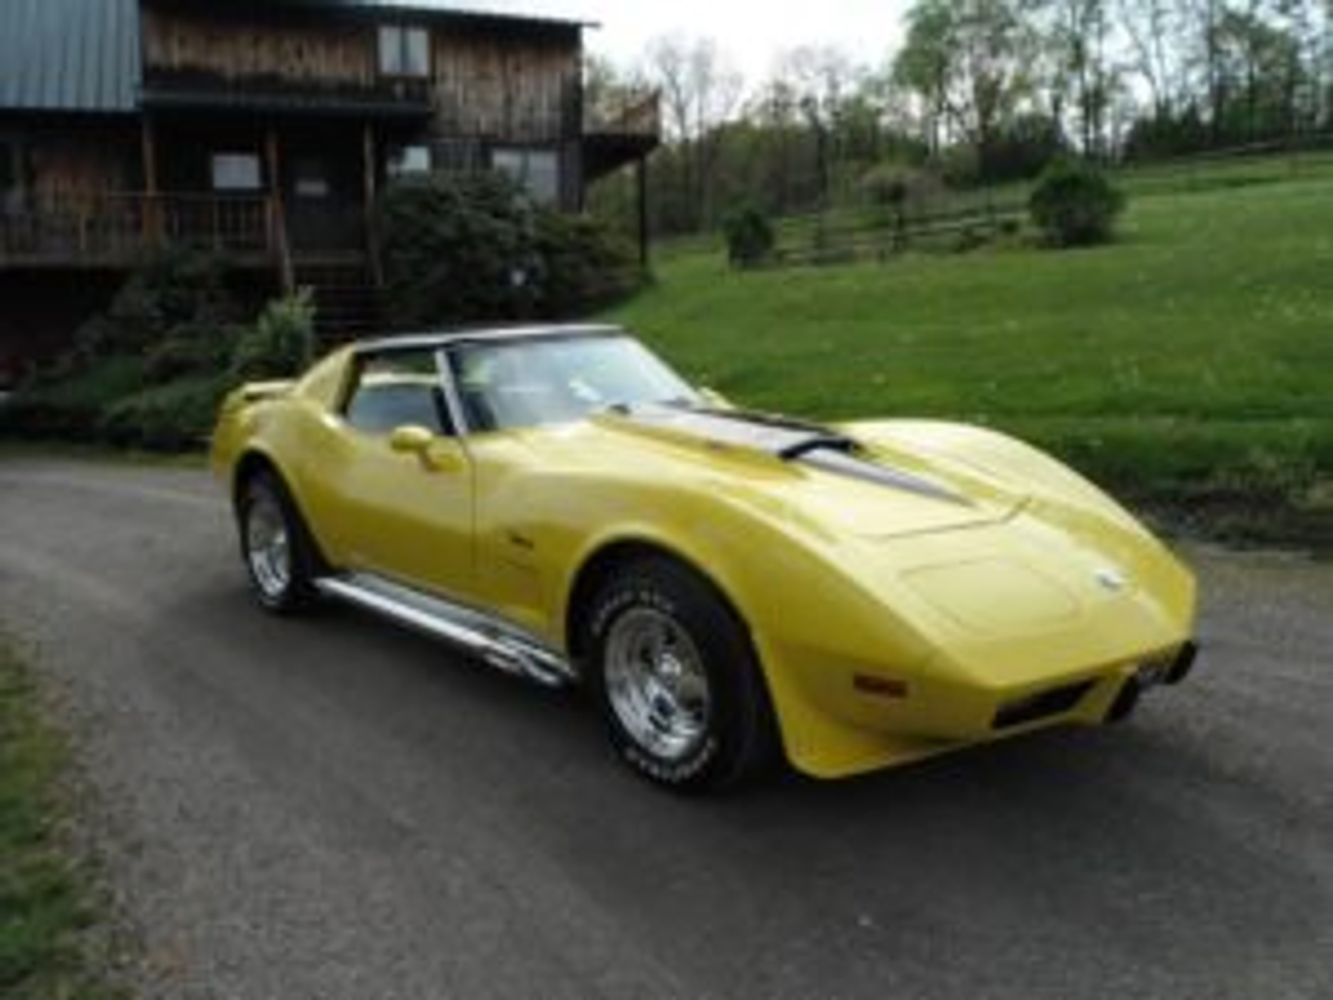 1975 Corvette Restomod 550 HP
Owner:  Mrs. Sandy Redden